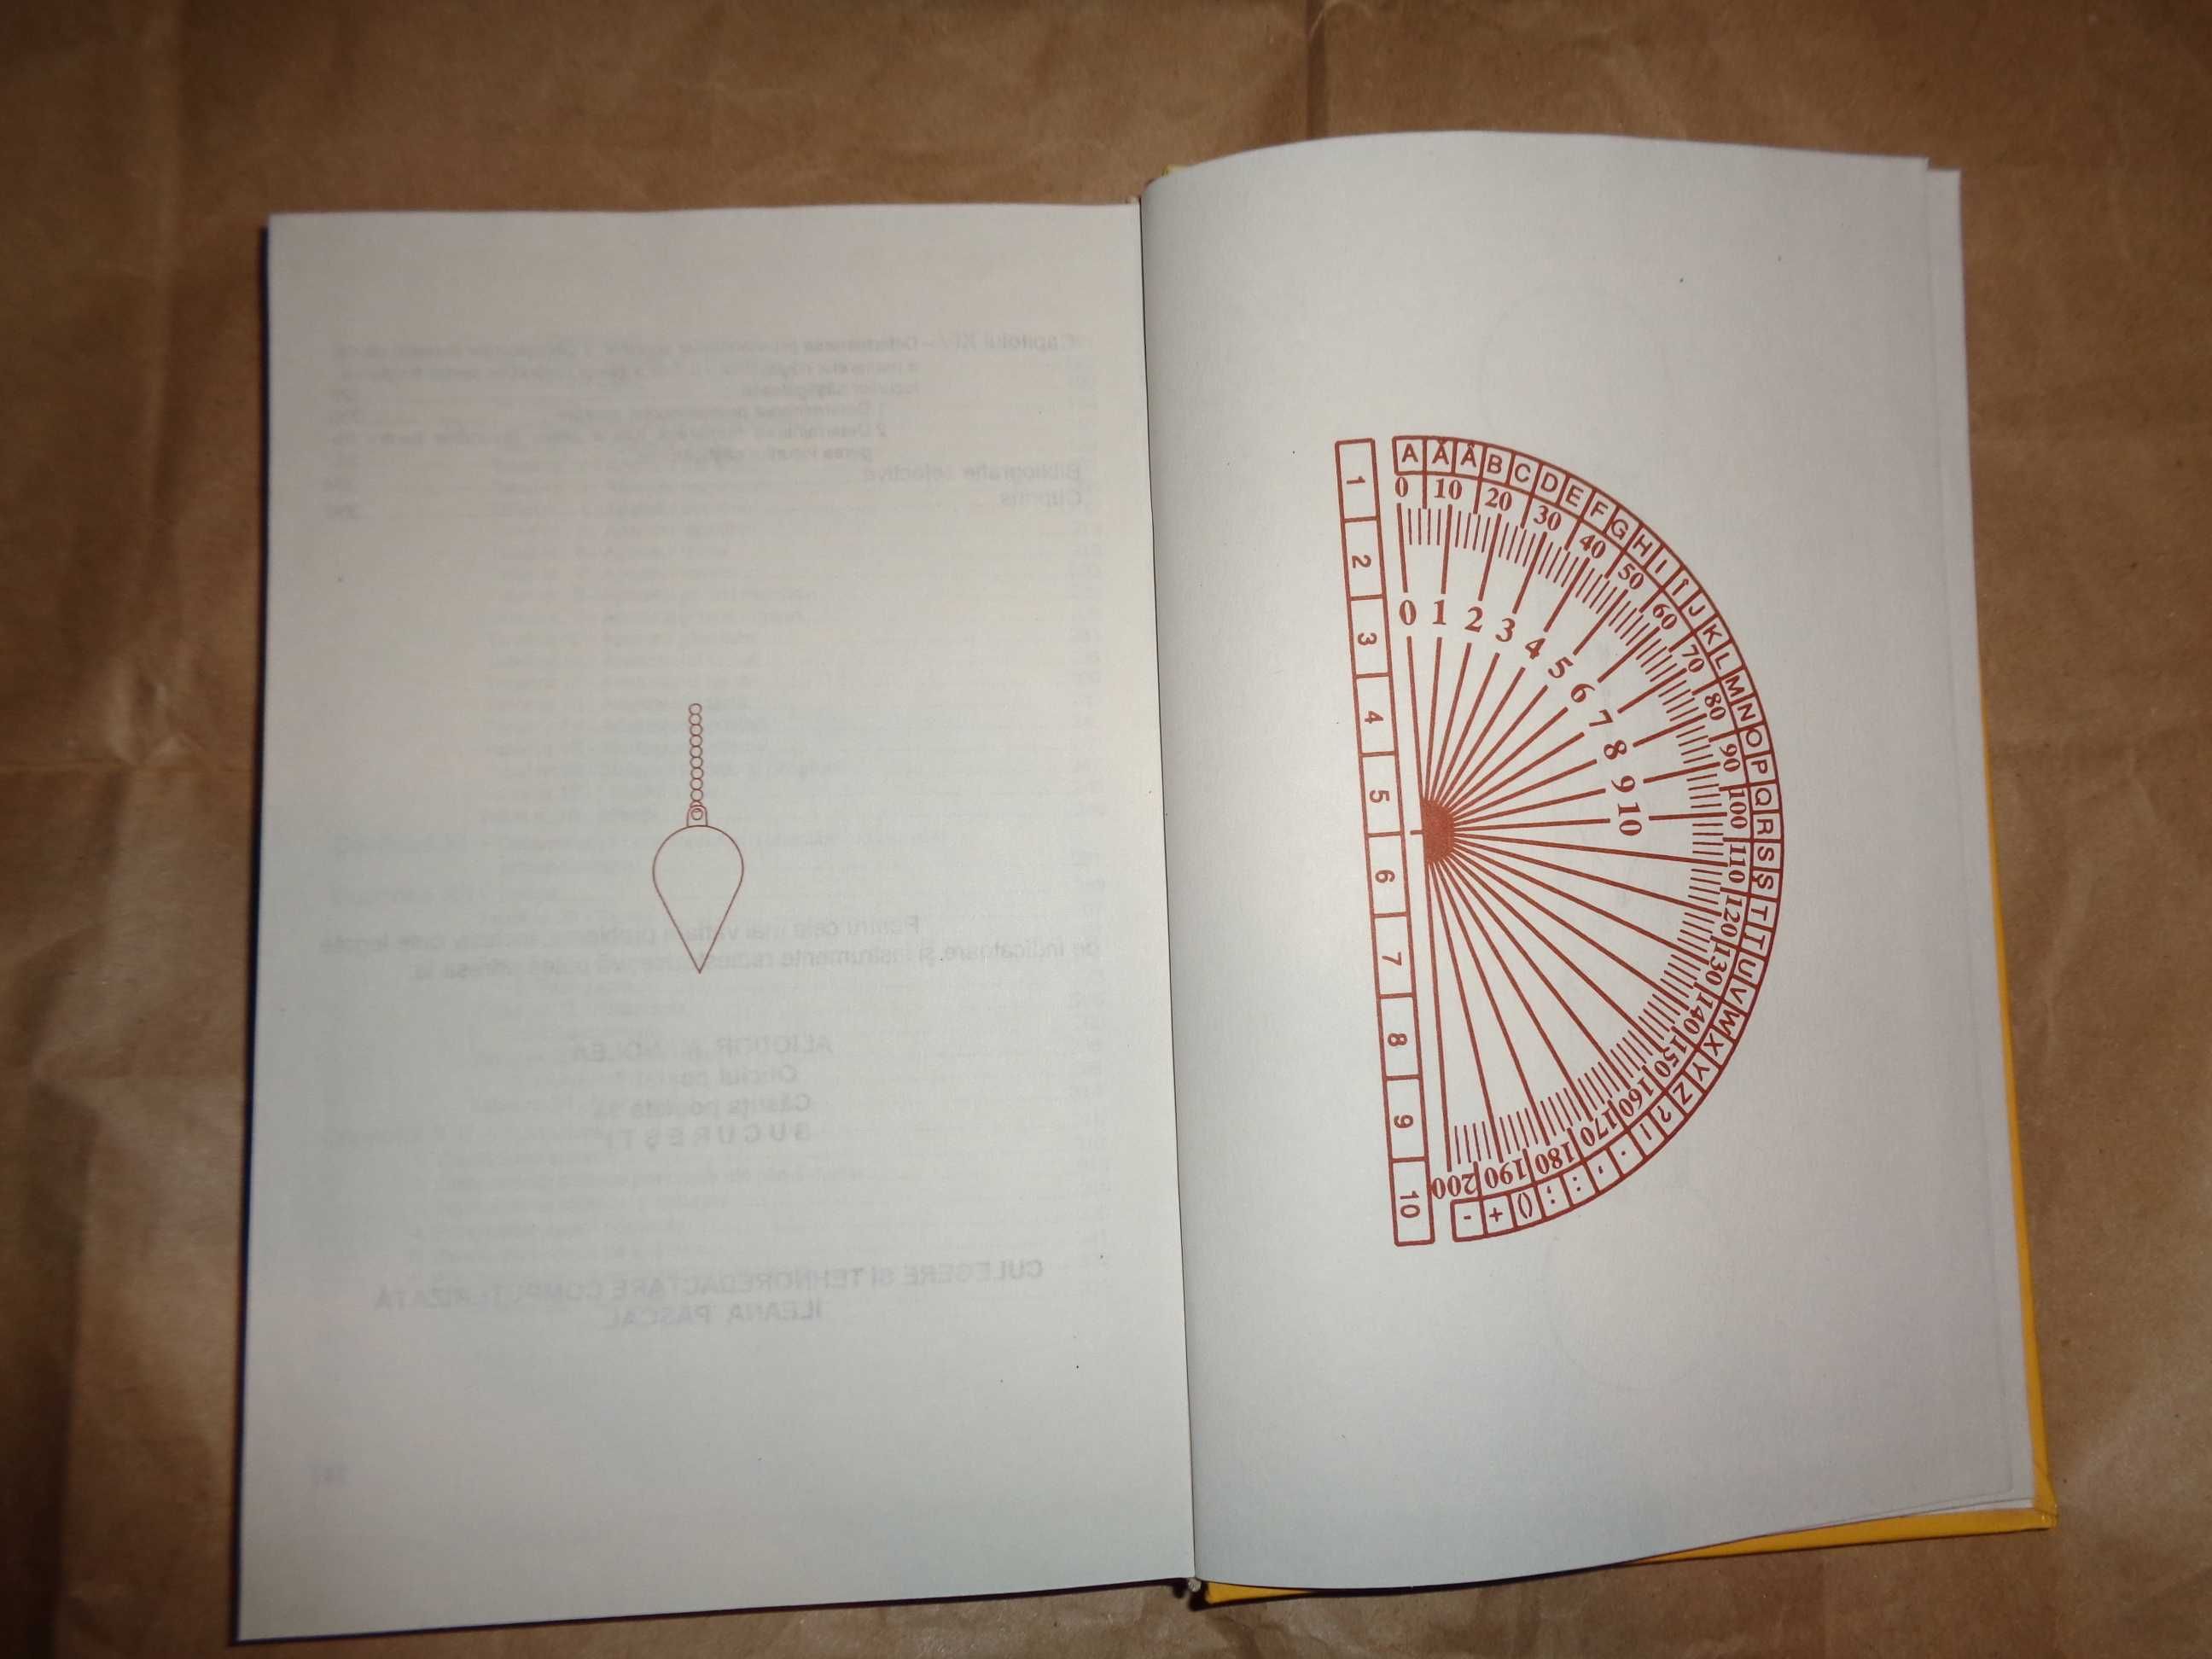 Manual de radiestezie - Aliodor Manolea ( an 1998, cartonata )